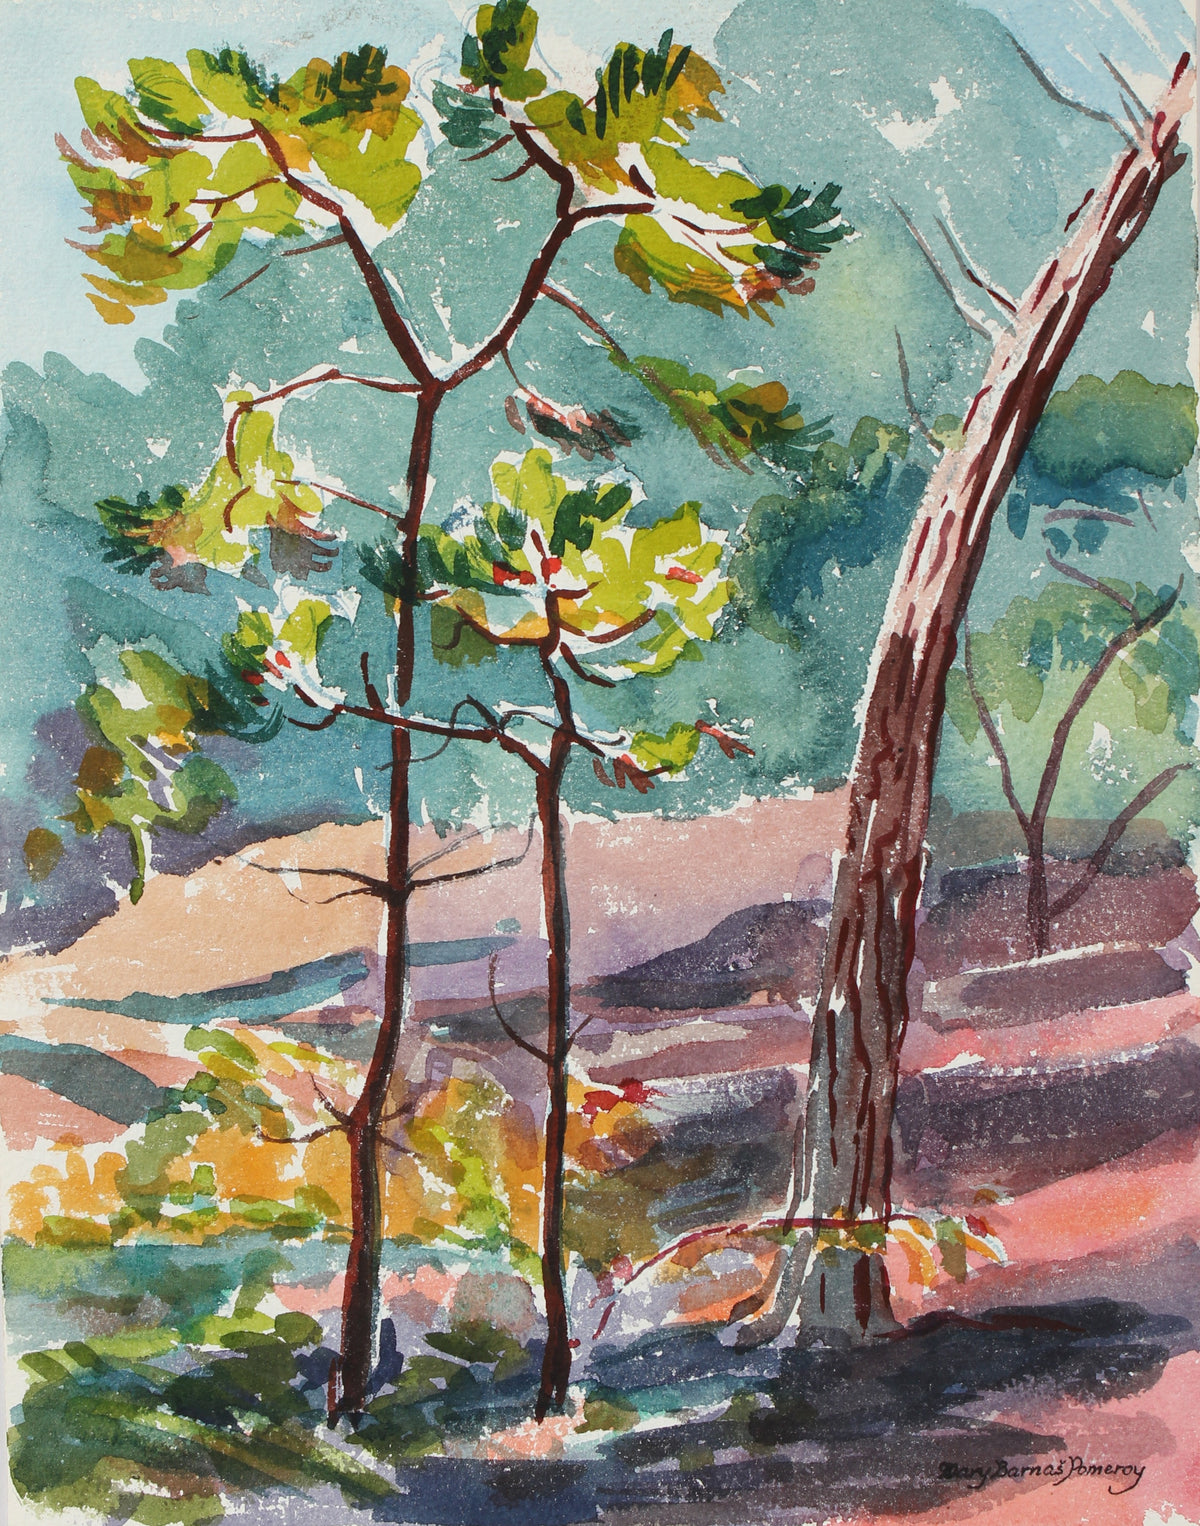 Forest Scene &lt;br&gt;1955 Watercolor&lt;br&gt;&lt;br&gt;#98643